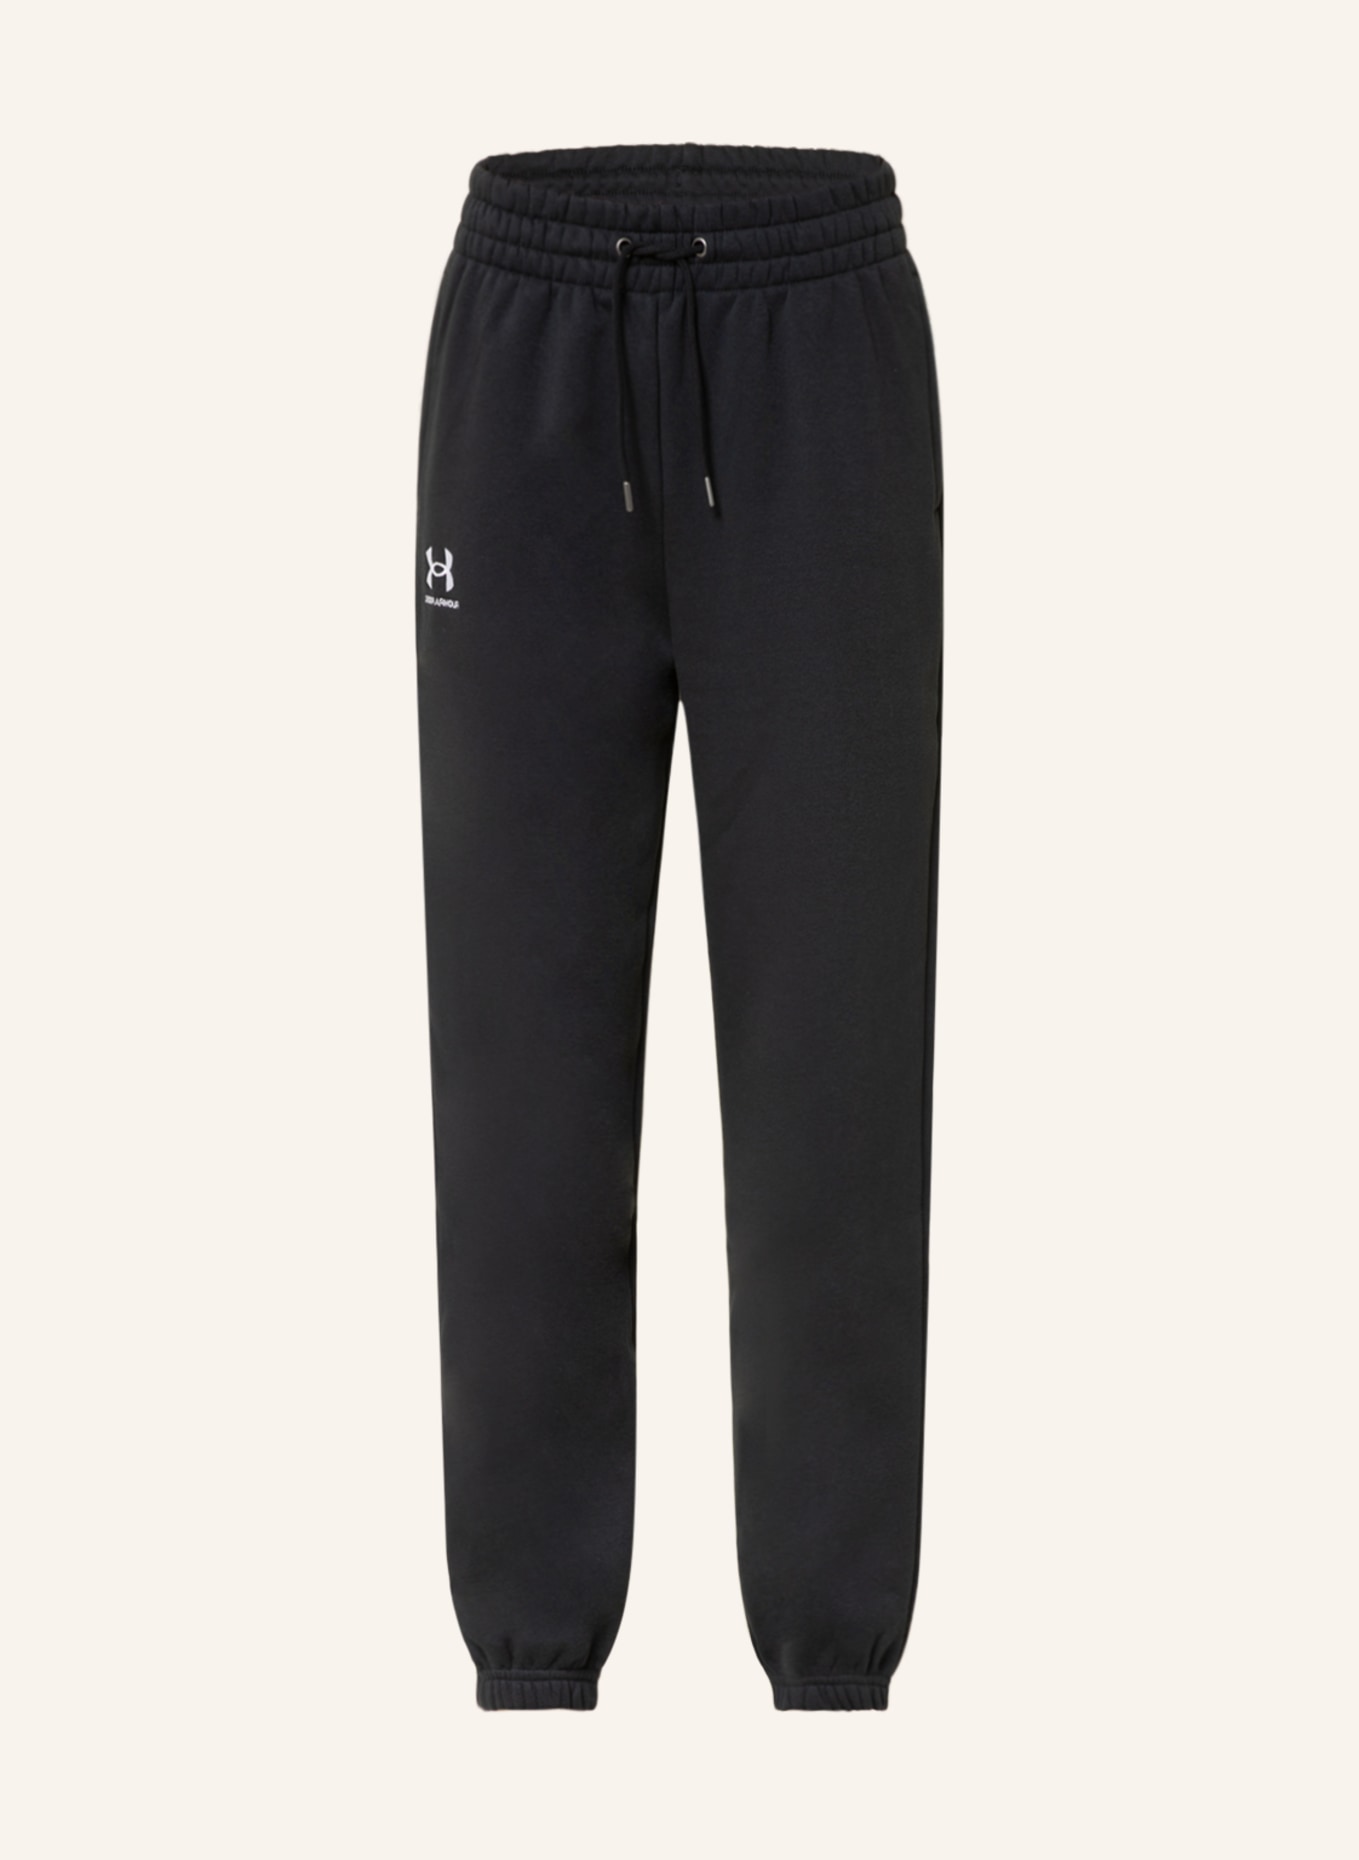 UNDER ARMOUR Sweatpants , Color: BLACK (Image 1)